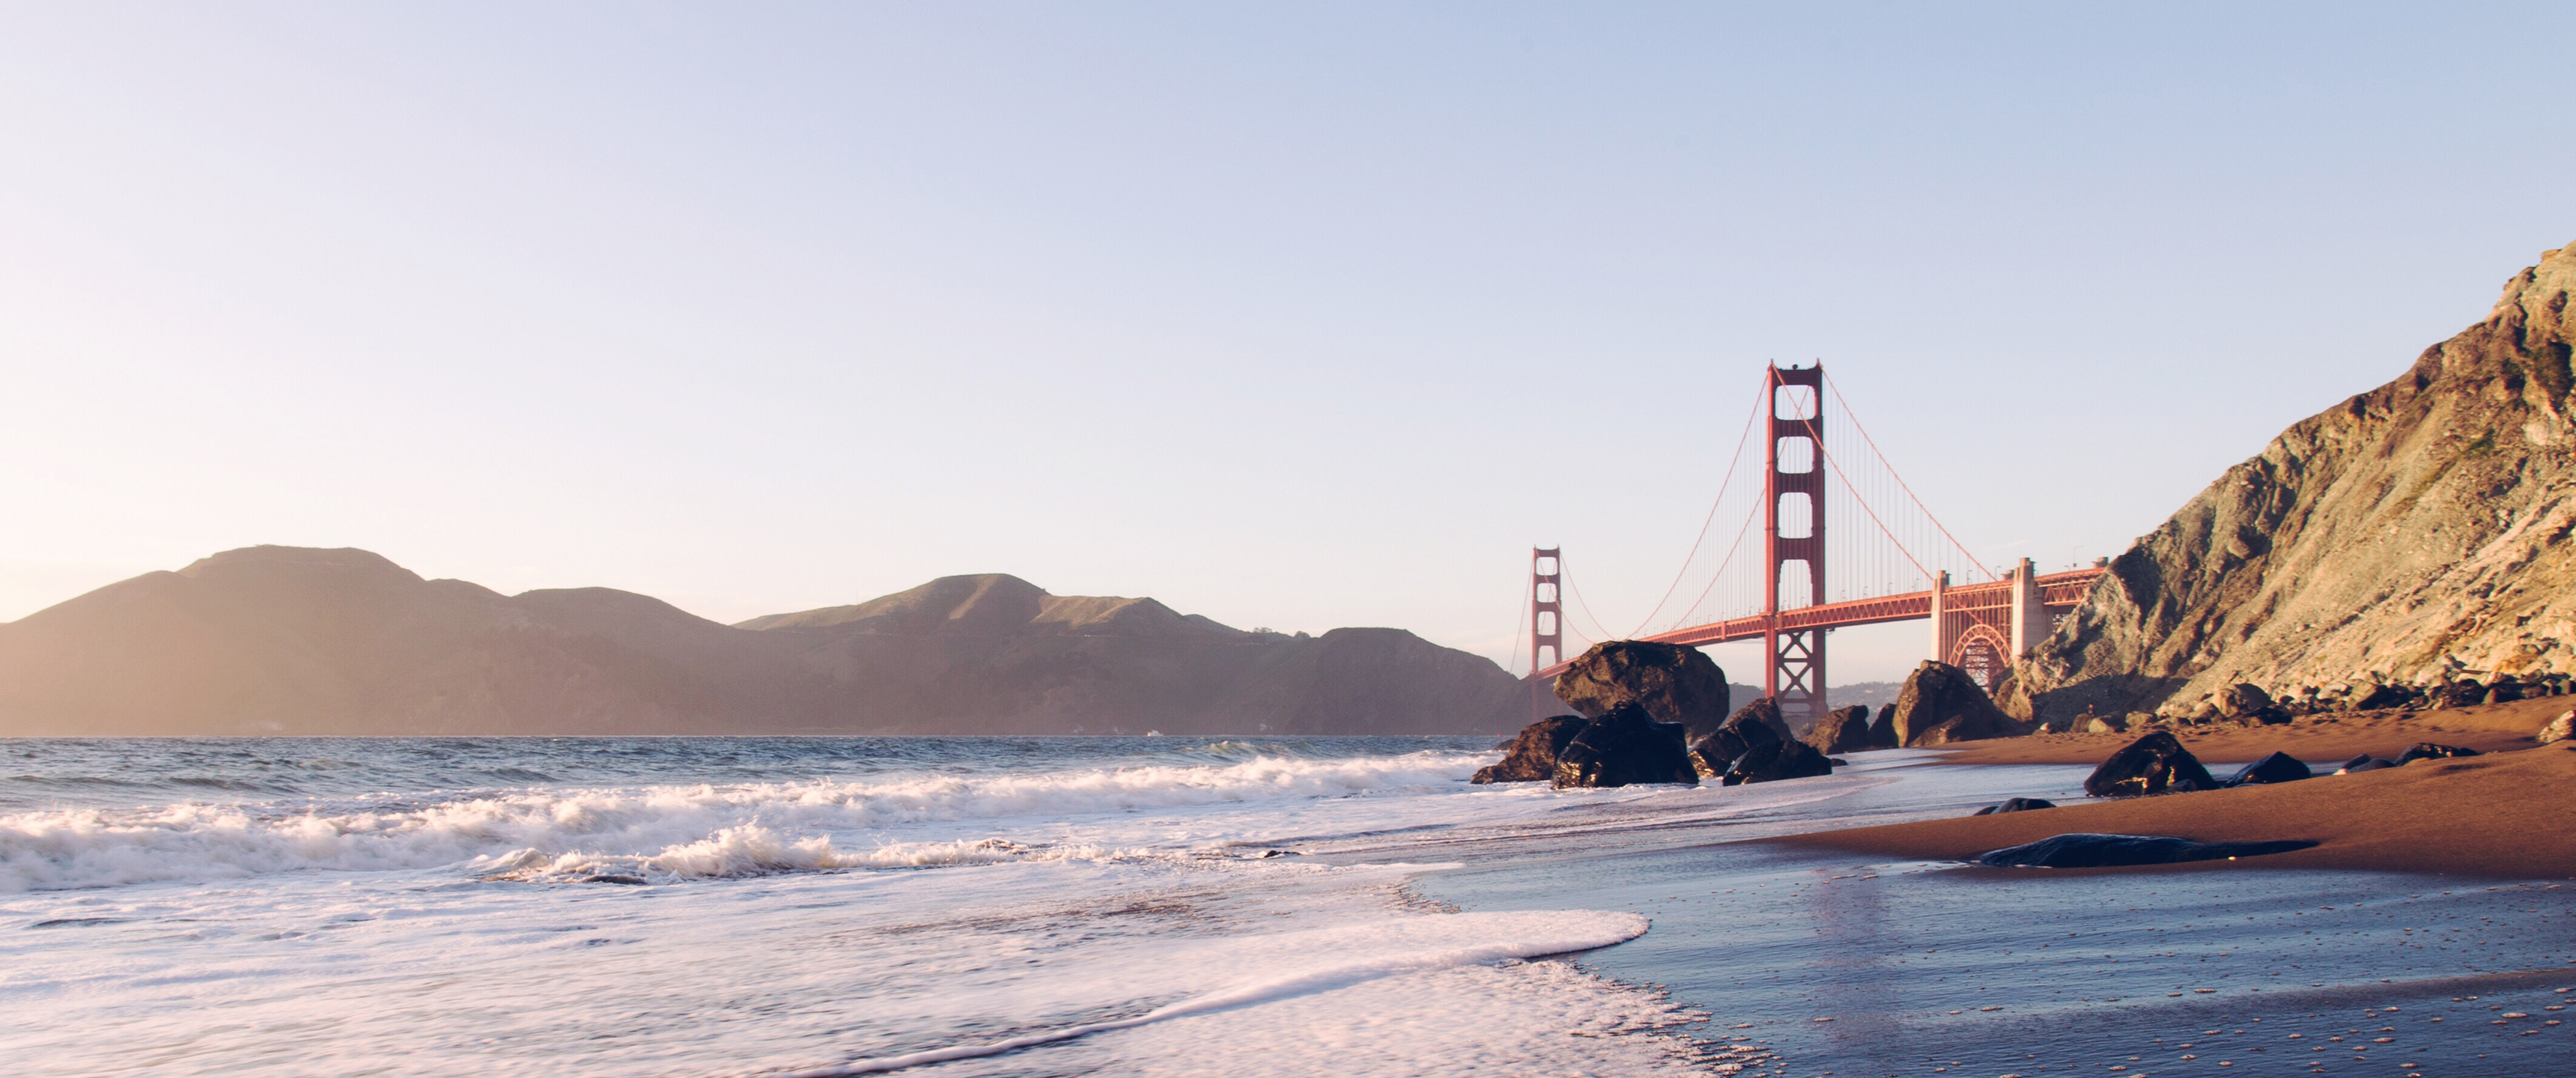 Golden Gate Bridge From The Beach 21 9 Wallpaper